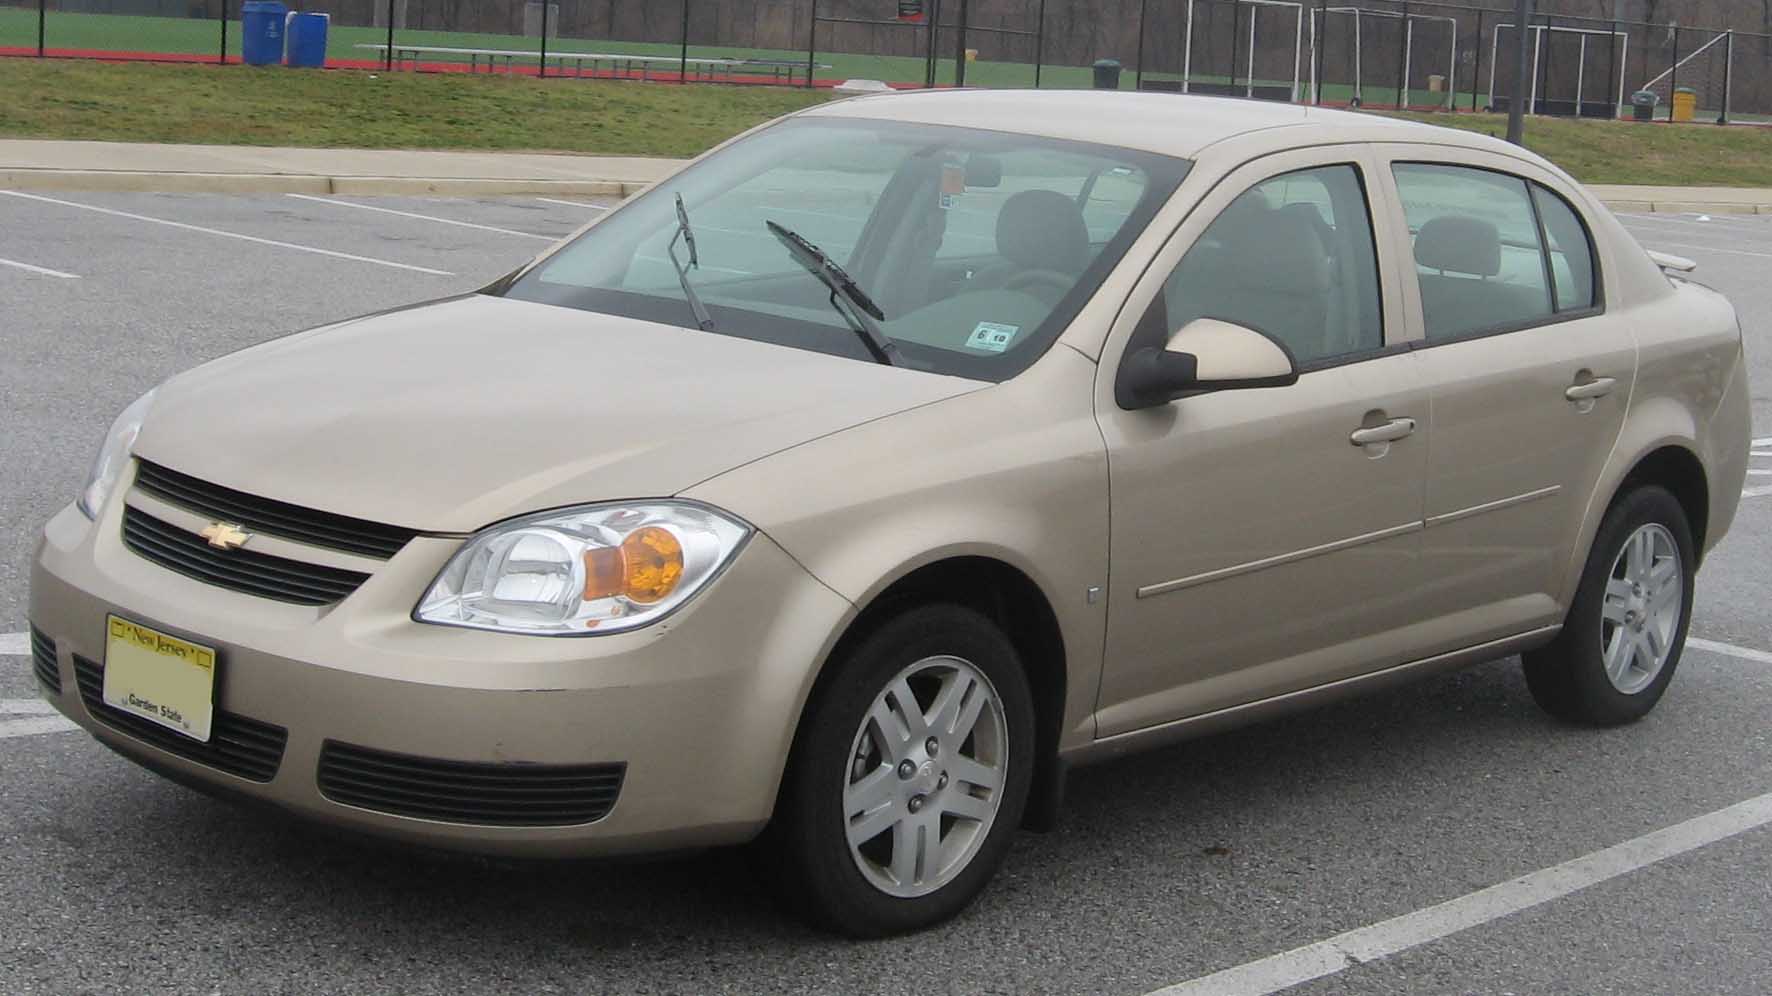 File:Chevrolet Cobalt LT sedan.jpg - Wikipedia